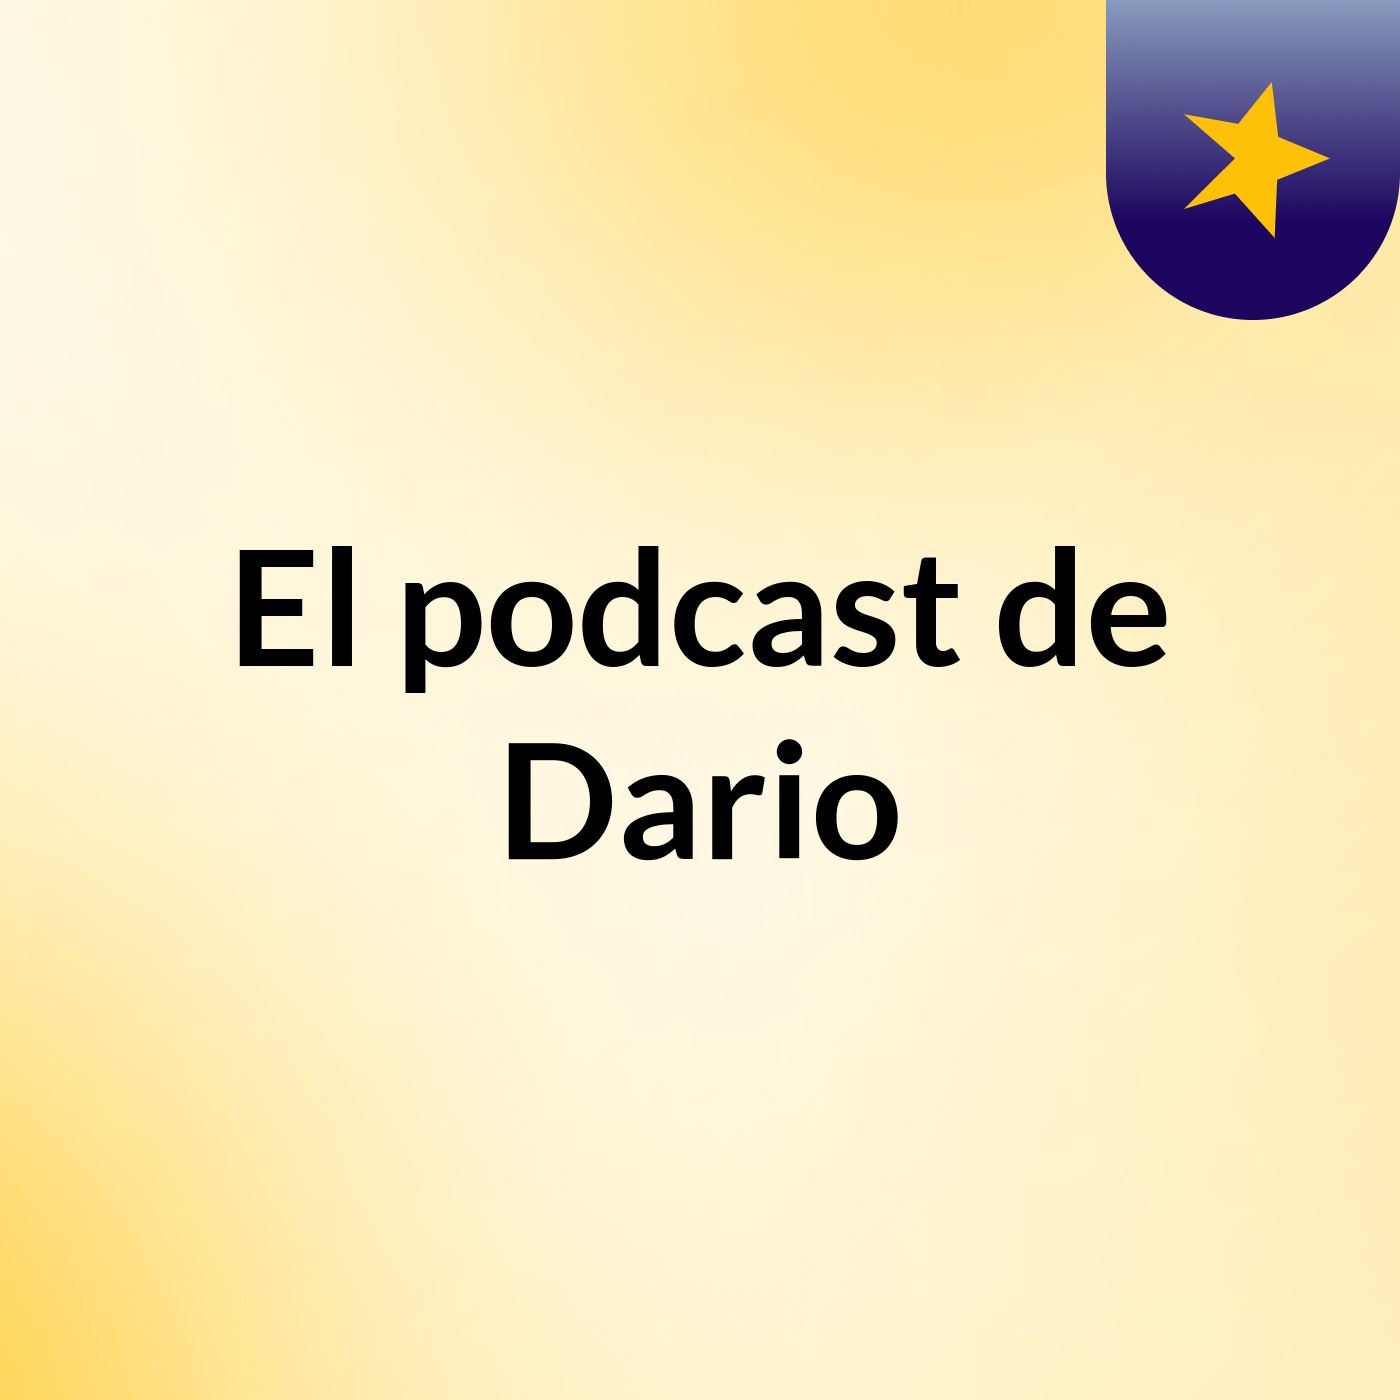 El podcast de Dario